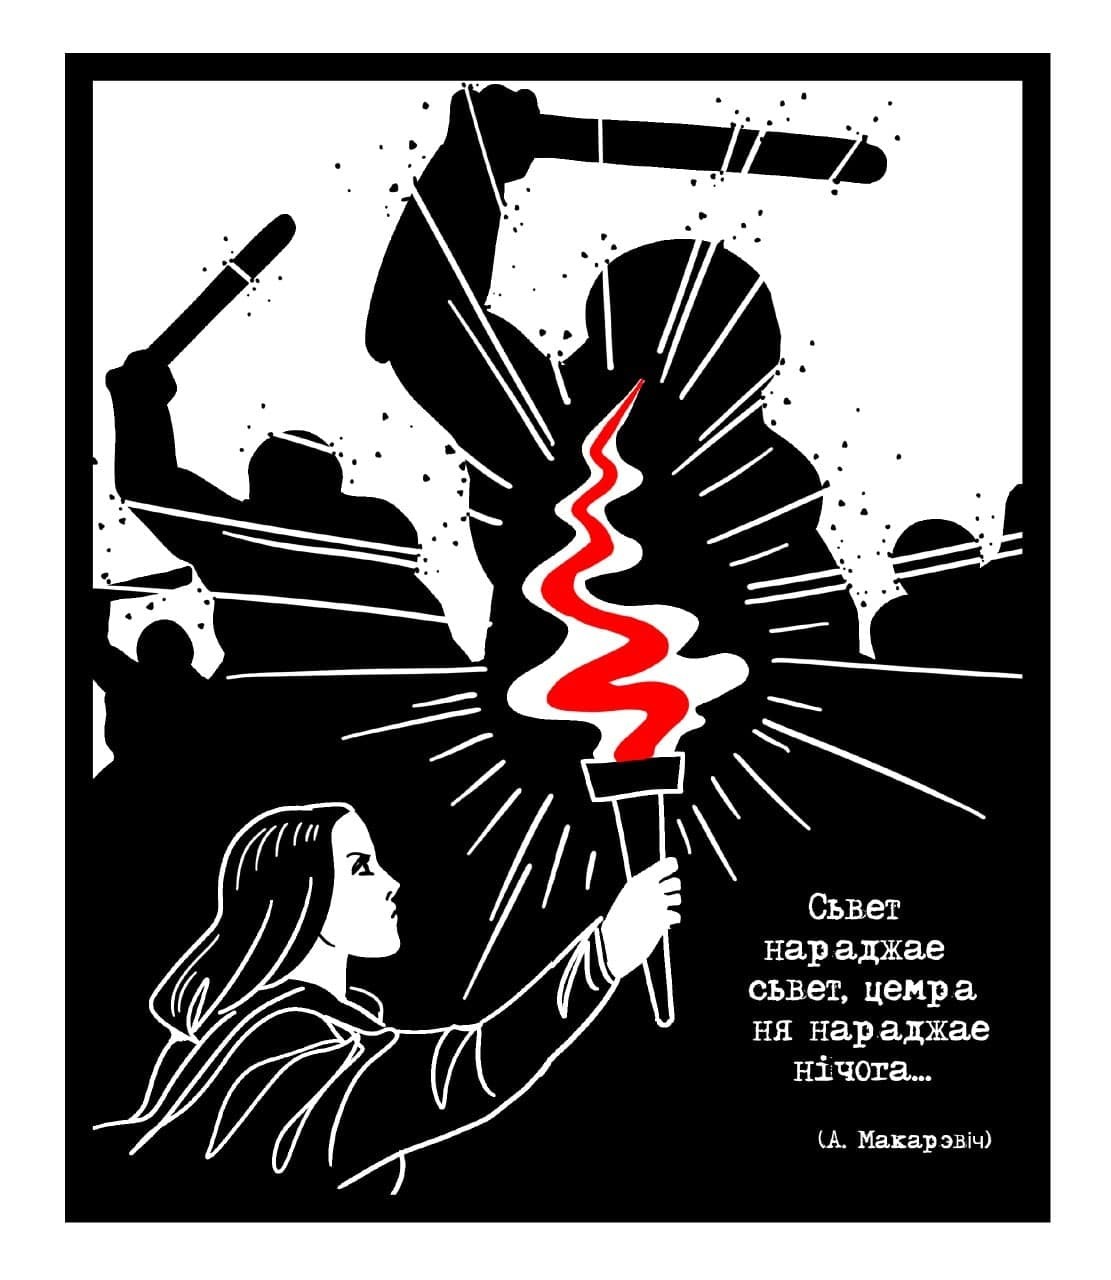 Сучасны беларускі плакат невядомага мастака — з тэлеграм-каналу «Нашай Нівы»